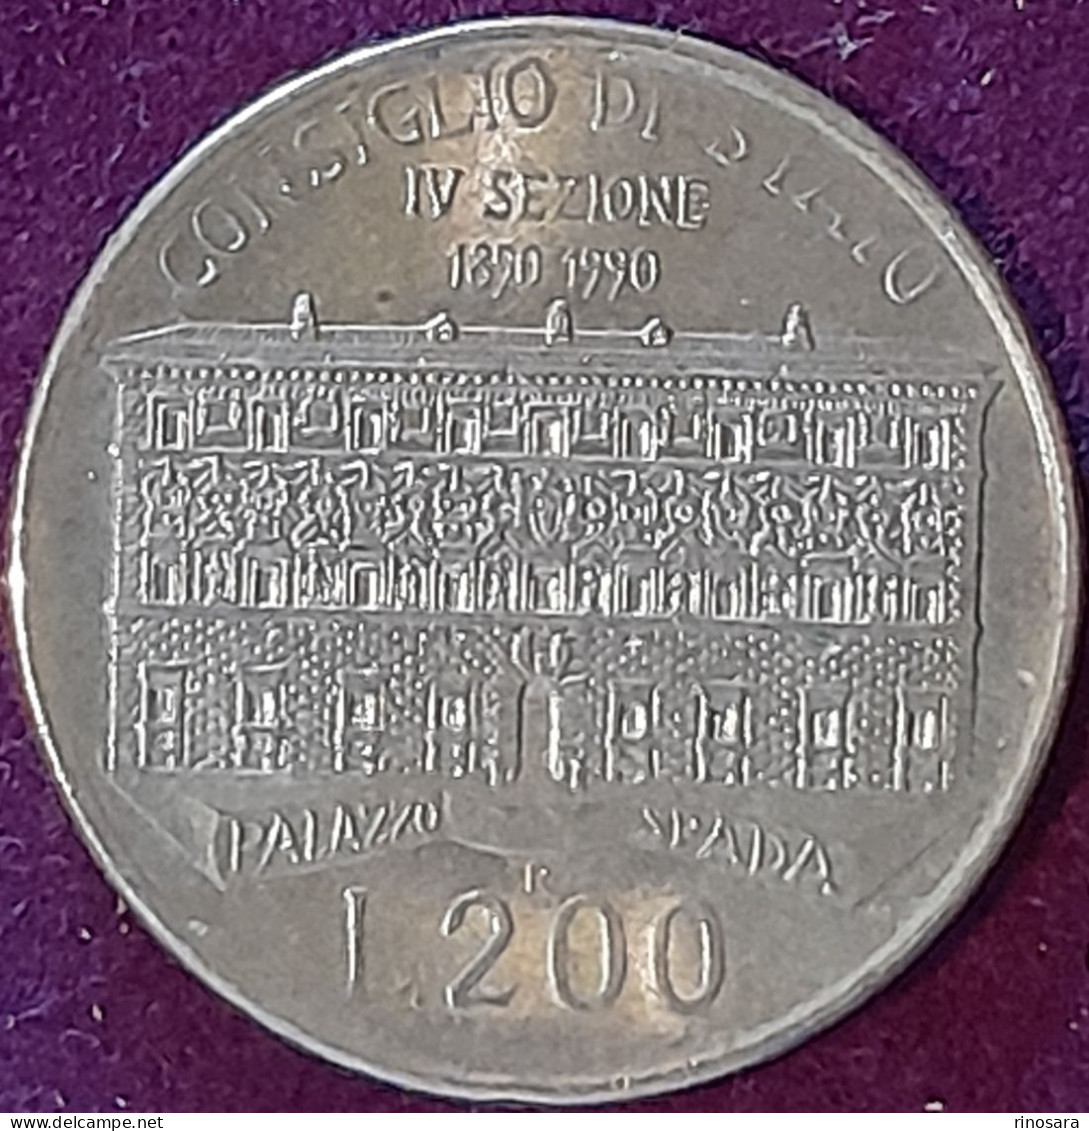 Errore Di Conio 200 Lire 1990 Repubblica Italiana Commemorativa Palazzo Spada - Variëteiten En Curiosa